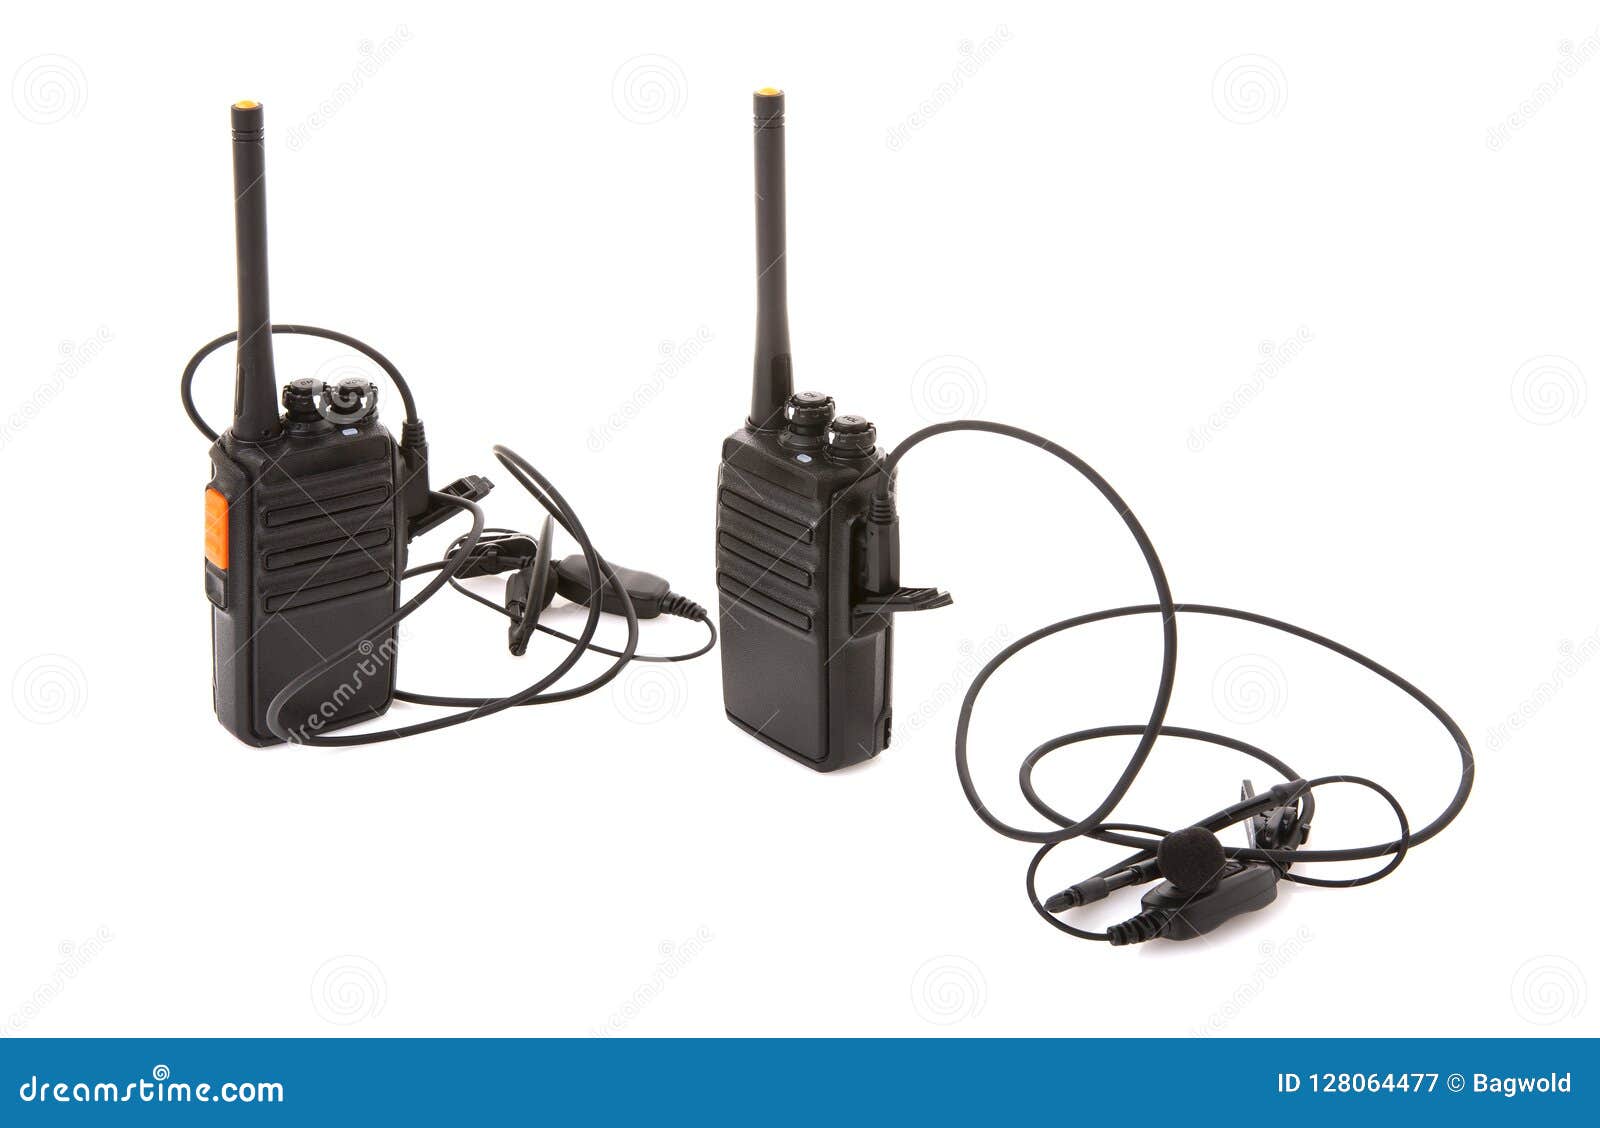 pair of walkie talkie 2 way radios with headsets